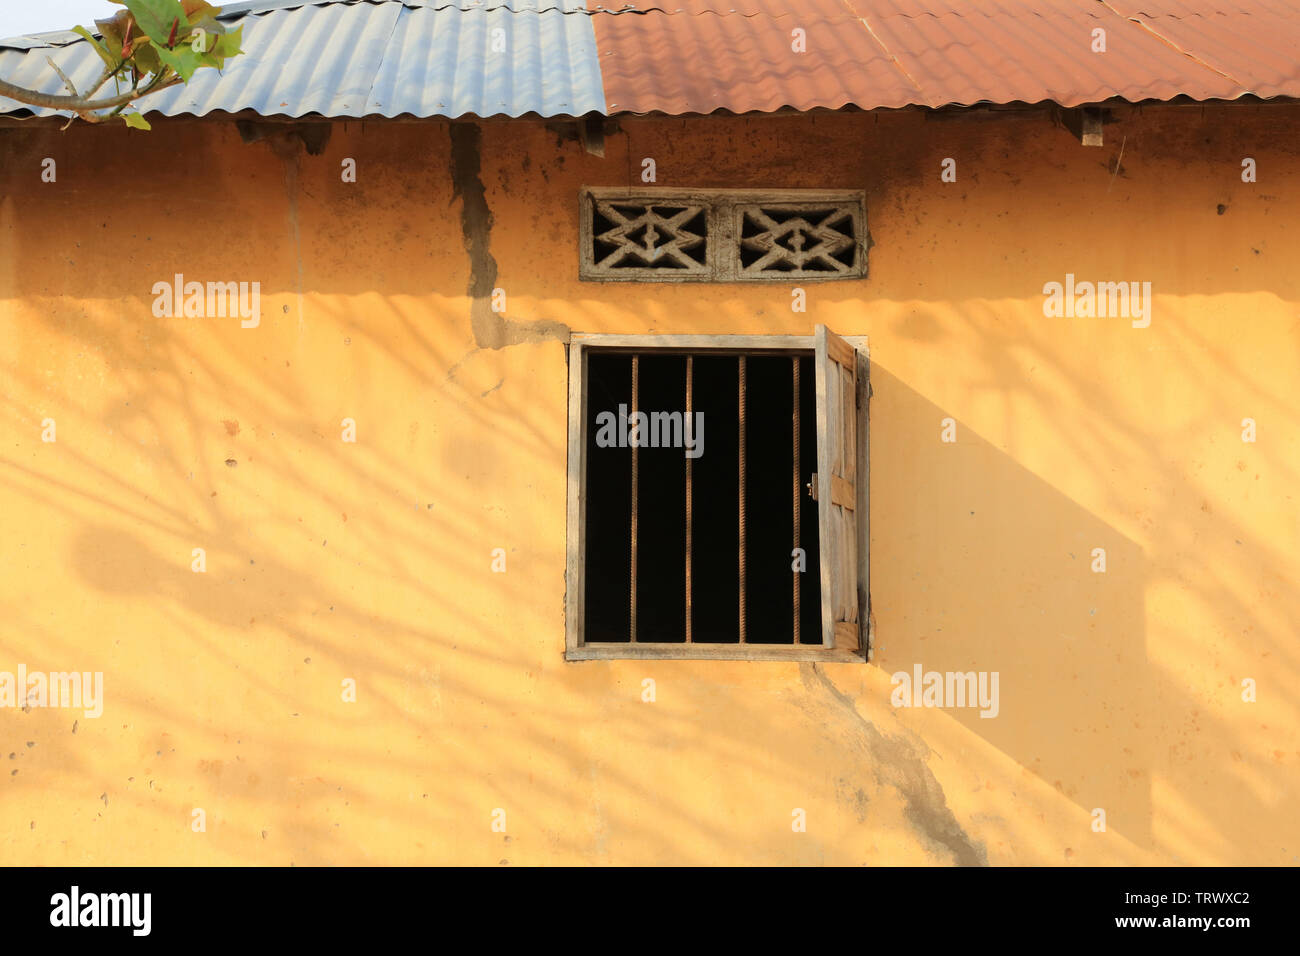 Fassade d'une Habitation dans le Village de Datscha Attikpayé. Togo. Afrique de l'Ouest. Stockfoto